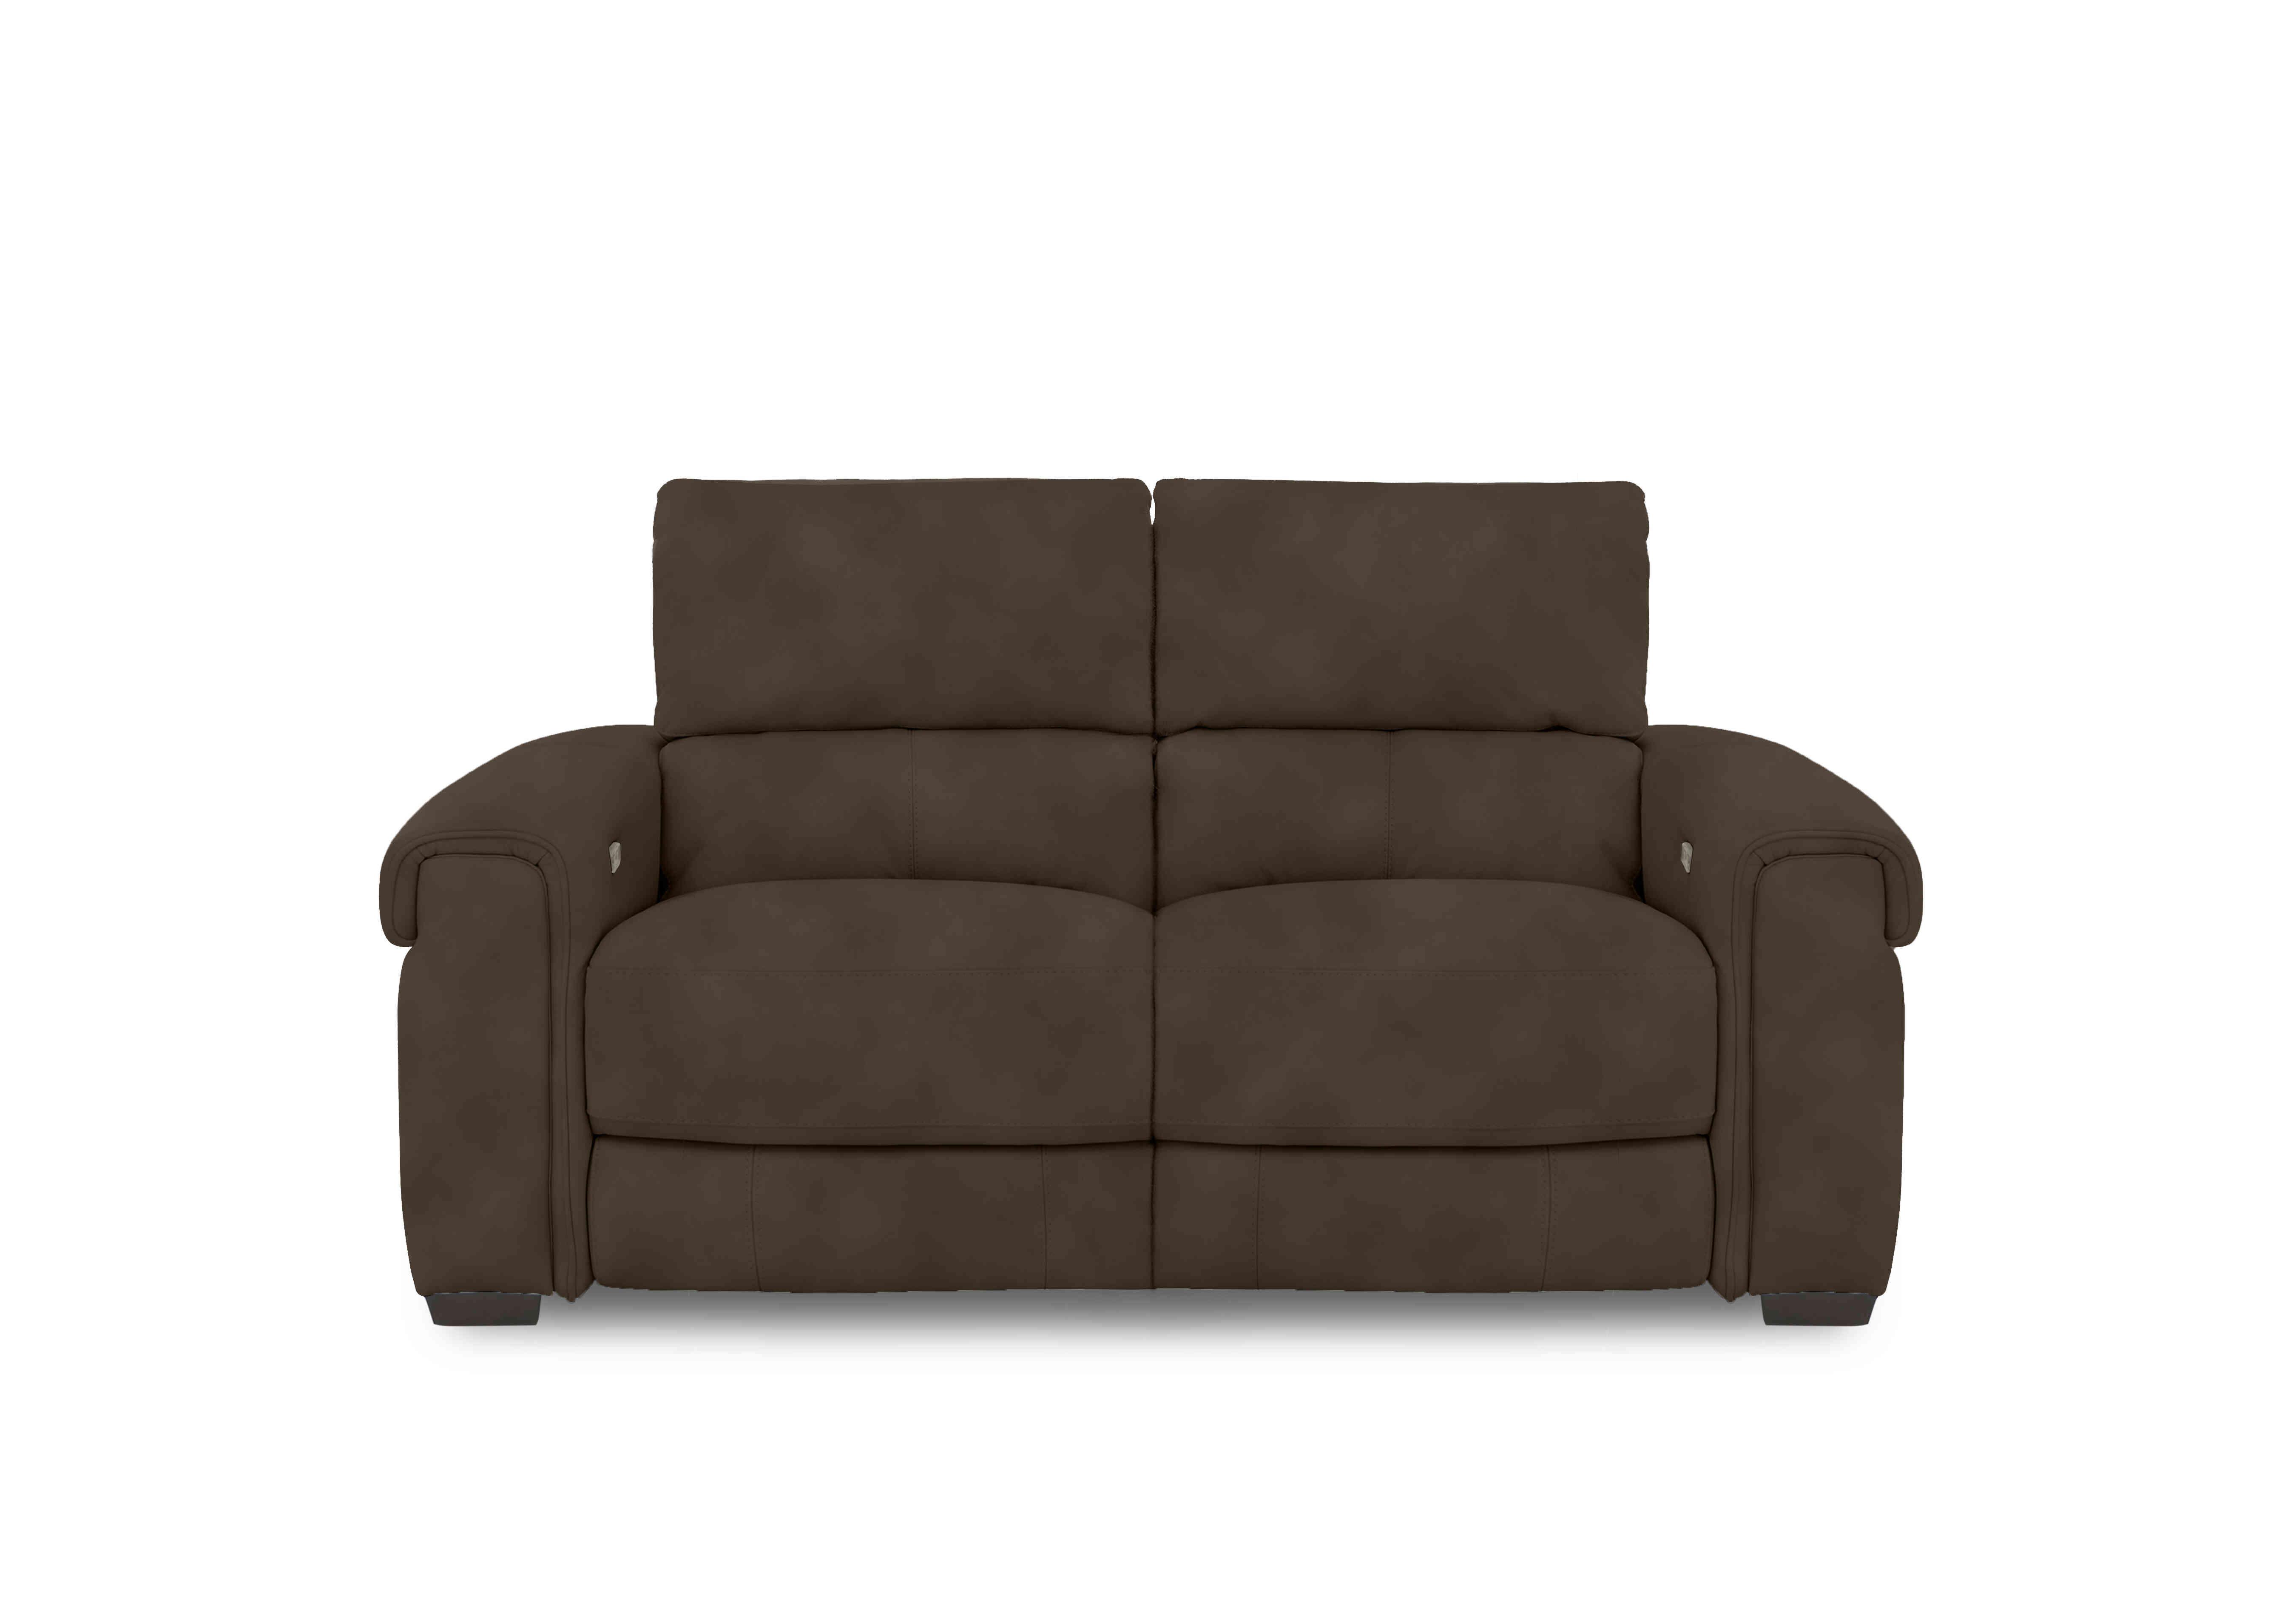 Nixon Fabric 2 Seater Sofa in Sfa-Pey-R04 Dark Chocolate on Furniture Village